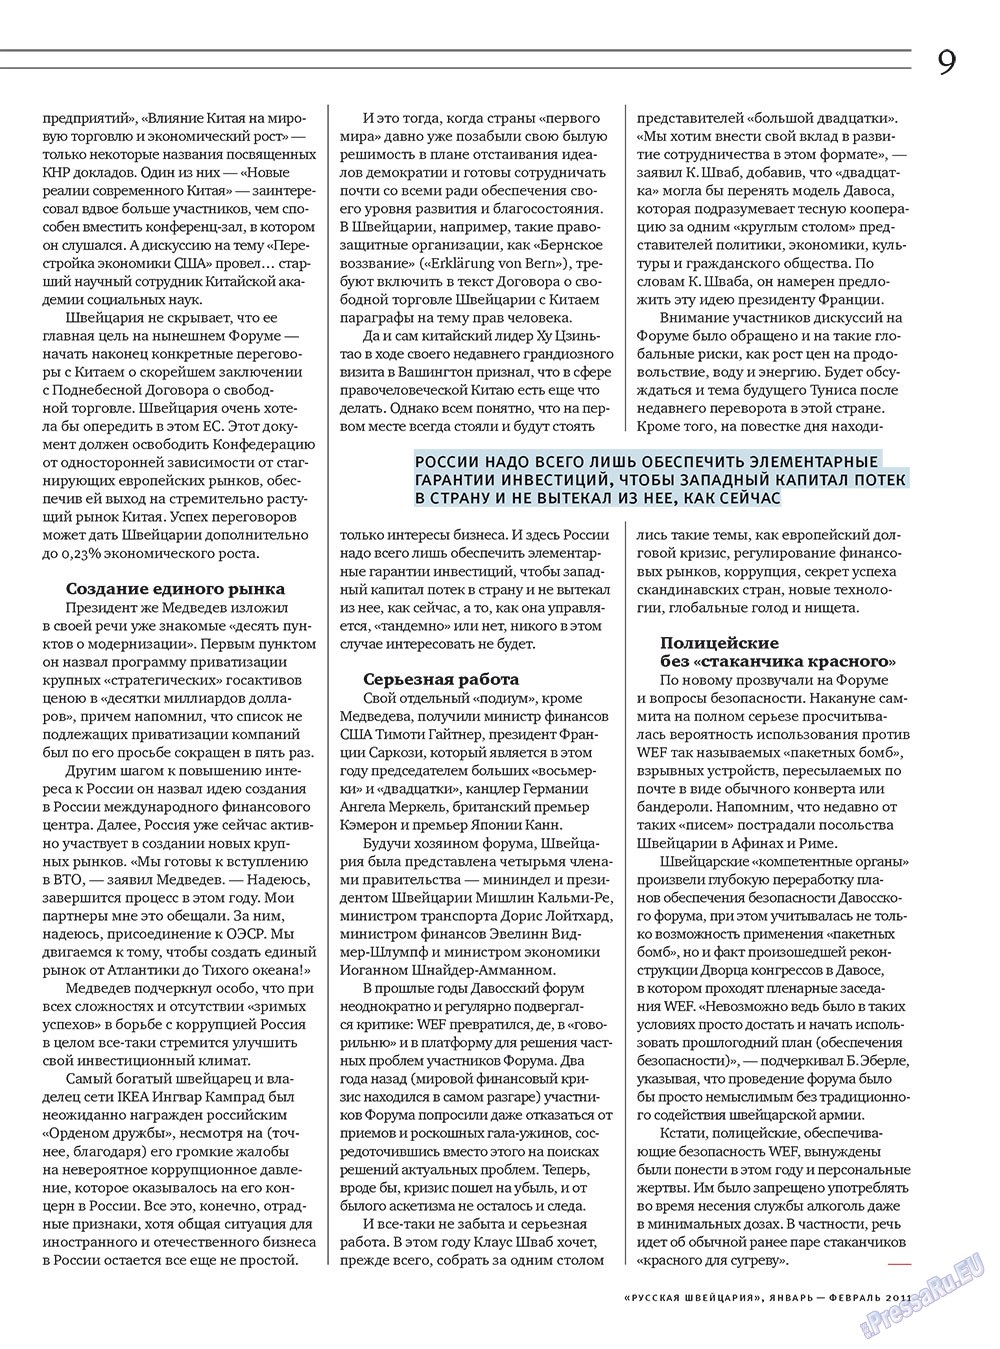 Русская Швейцария, журнал. 2011 №1 стр.9